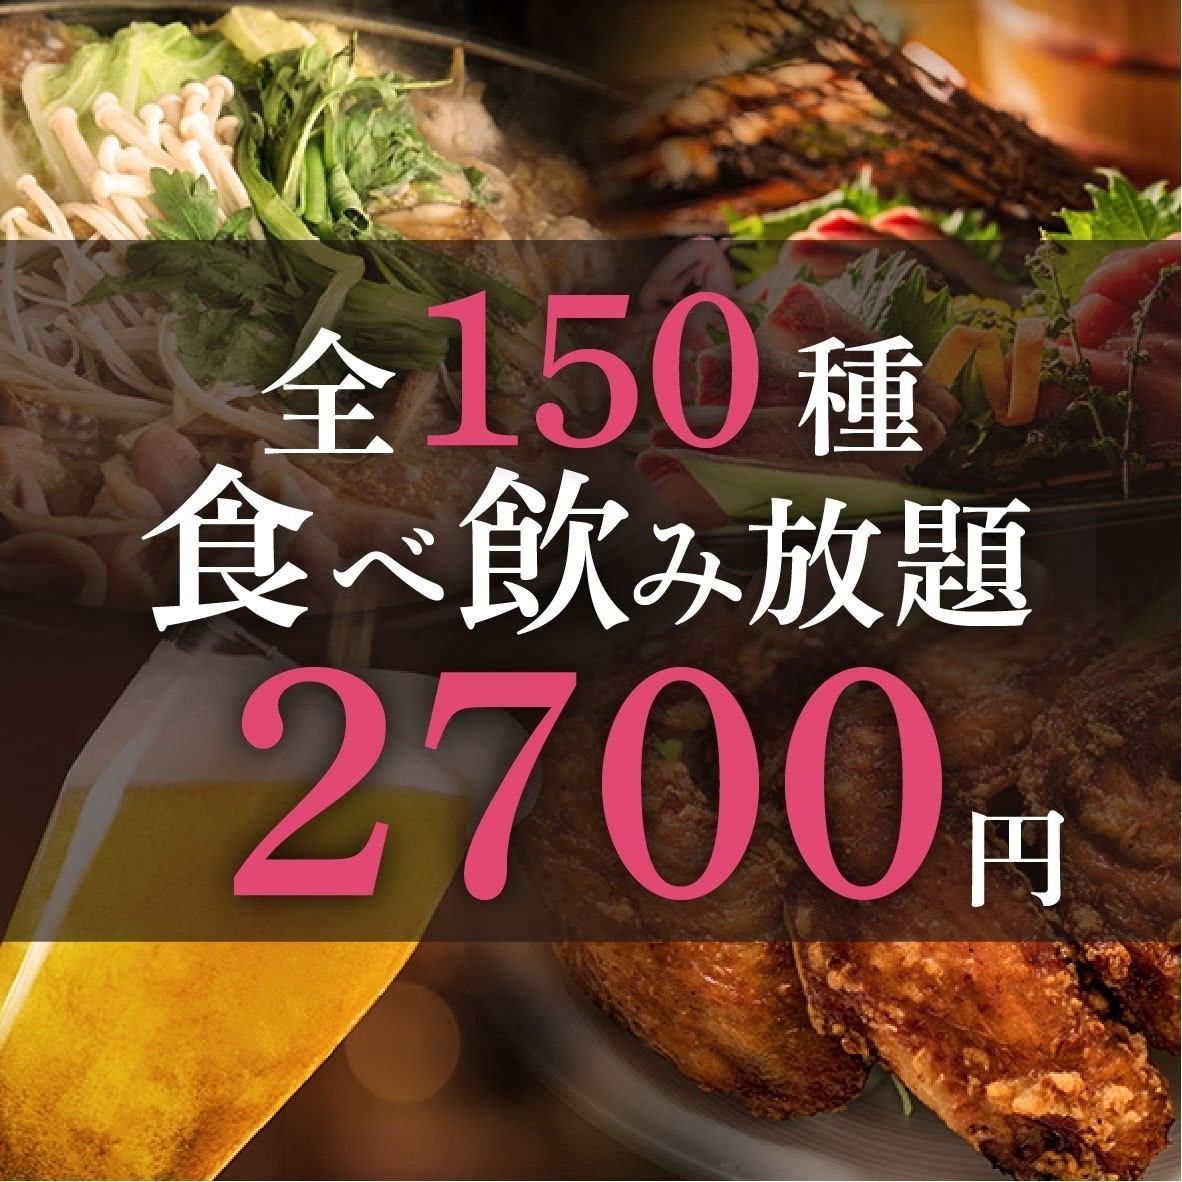 2,700日元起的无限量吃喝套餐♪非常适合接送聚会或酒会！